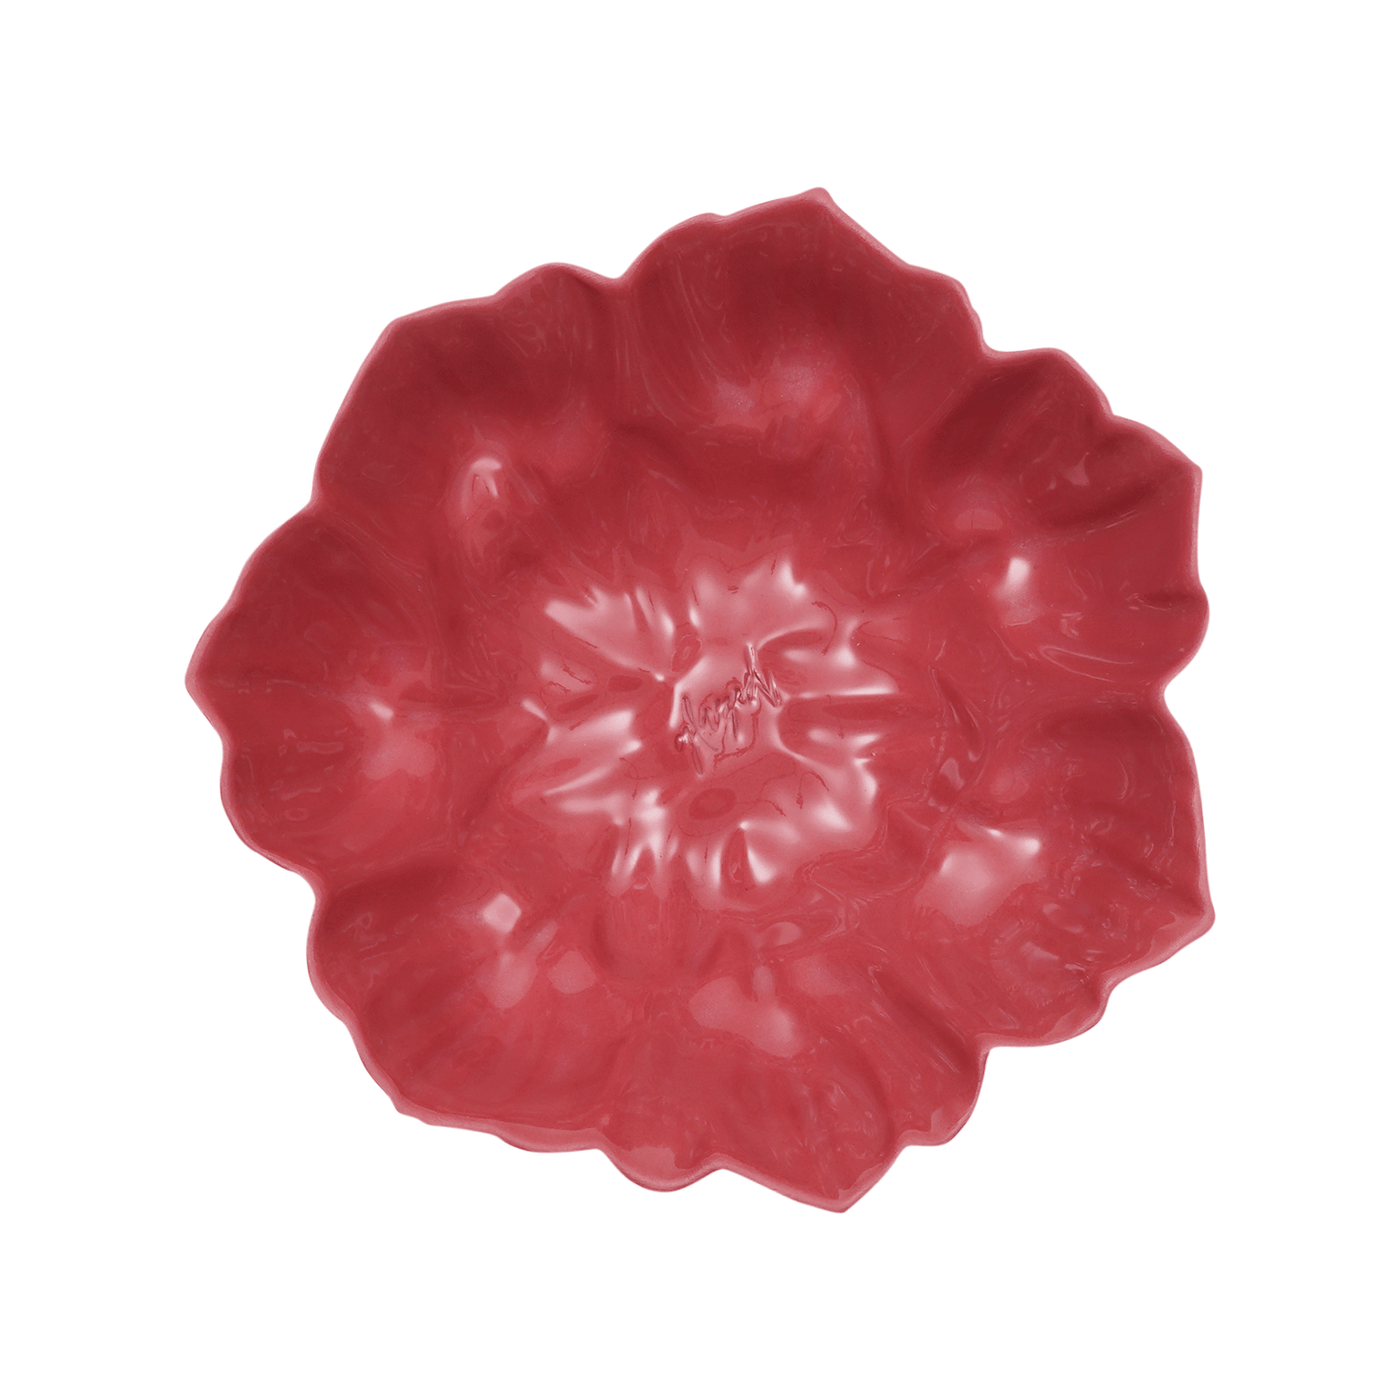 Anemone Handmade Bowl, Pink, 14 cm Bowls sazy.com